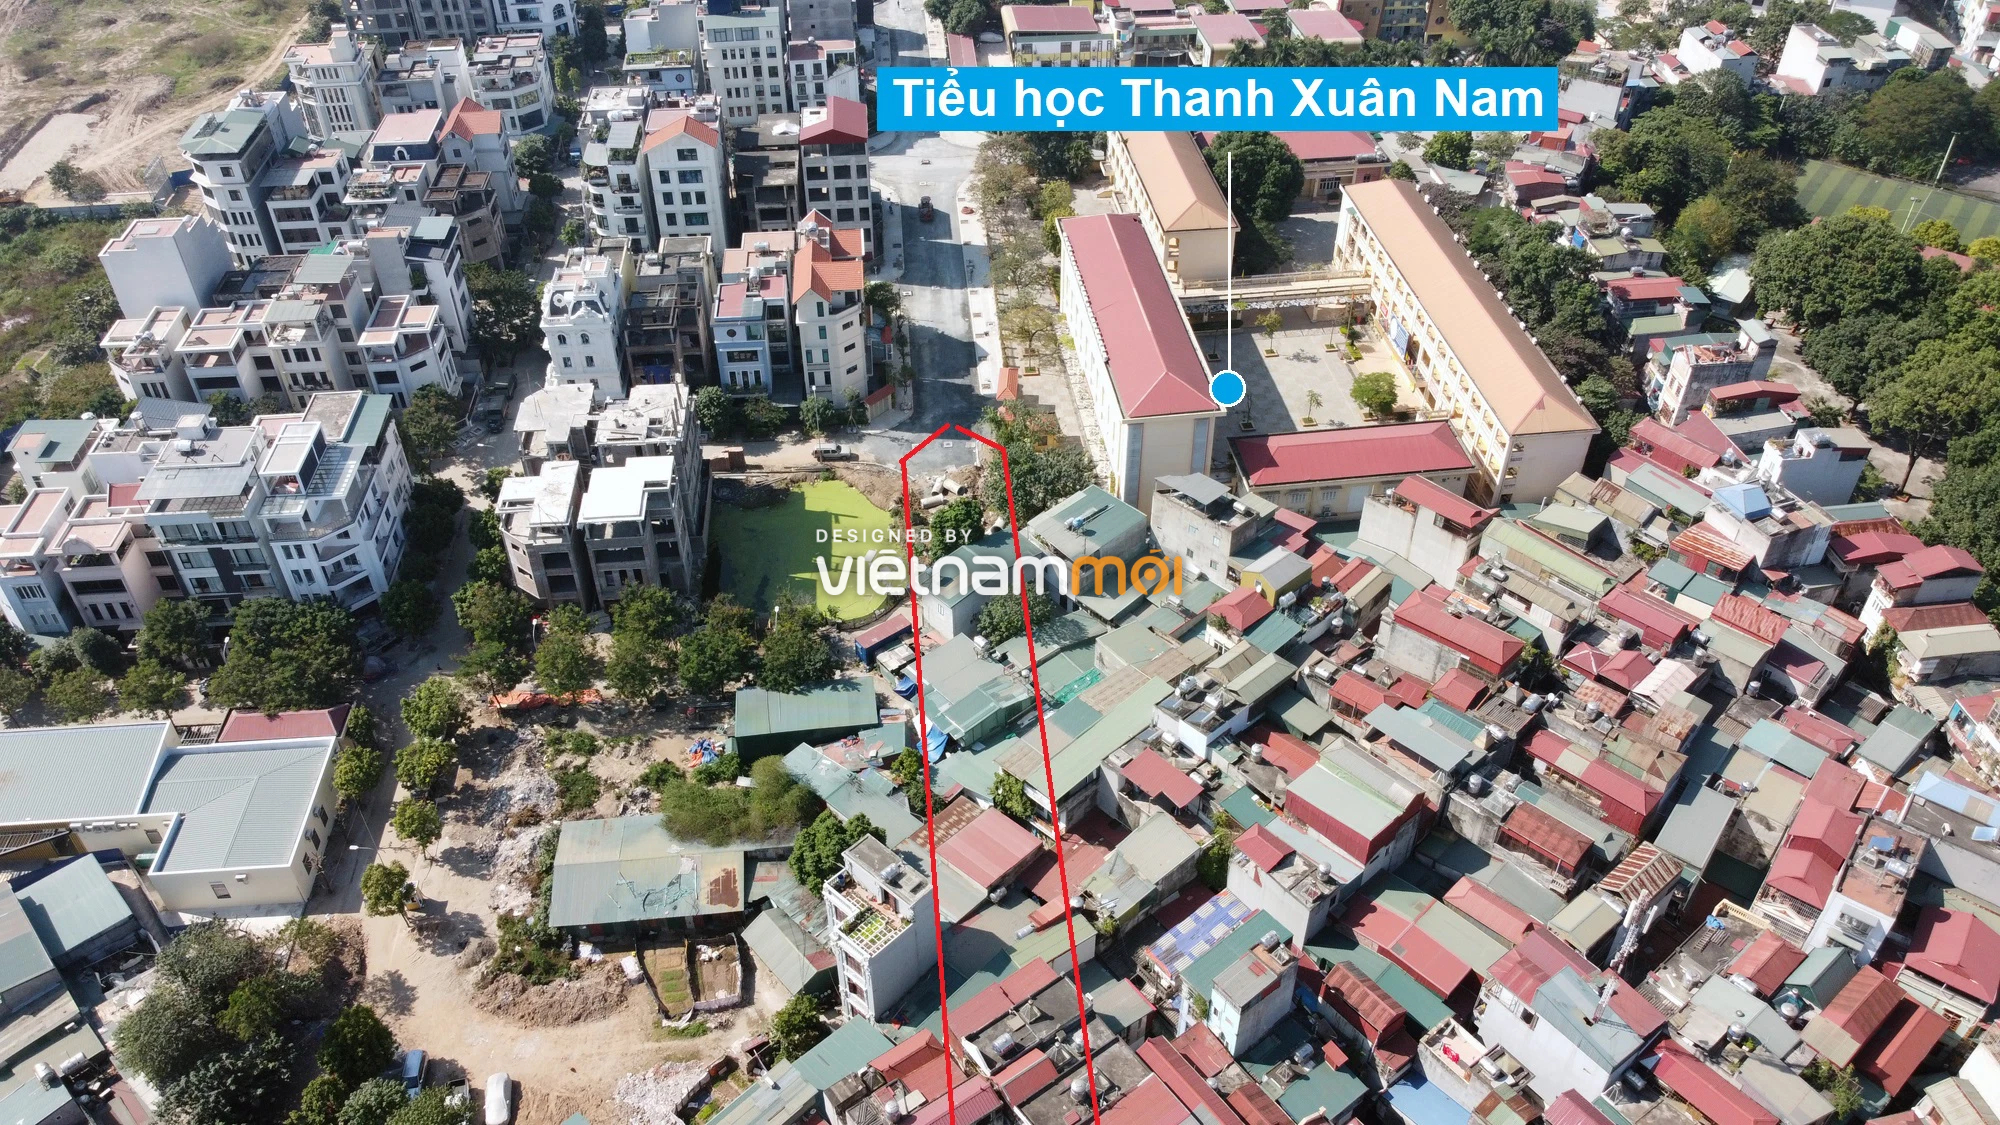 Những khu đất sắp thu hồi để mở đường ở quận Thanh Xuân, Hà Nội (phần 2) - Ảnh 8.